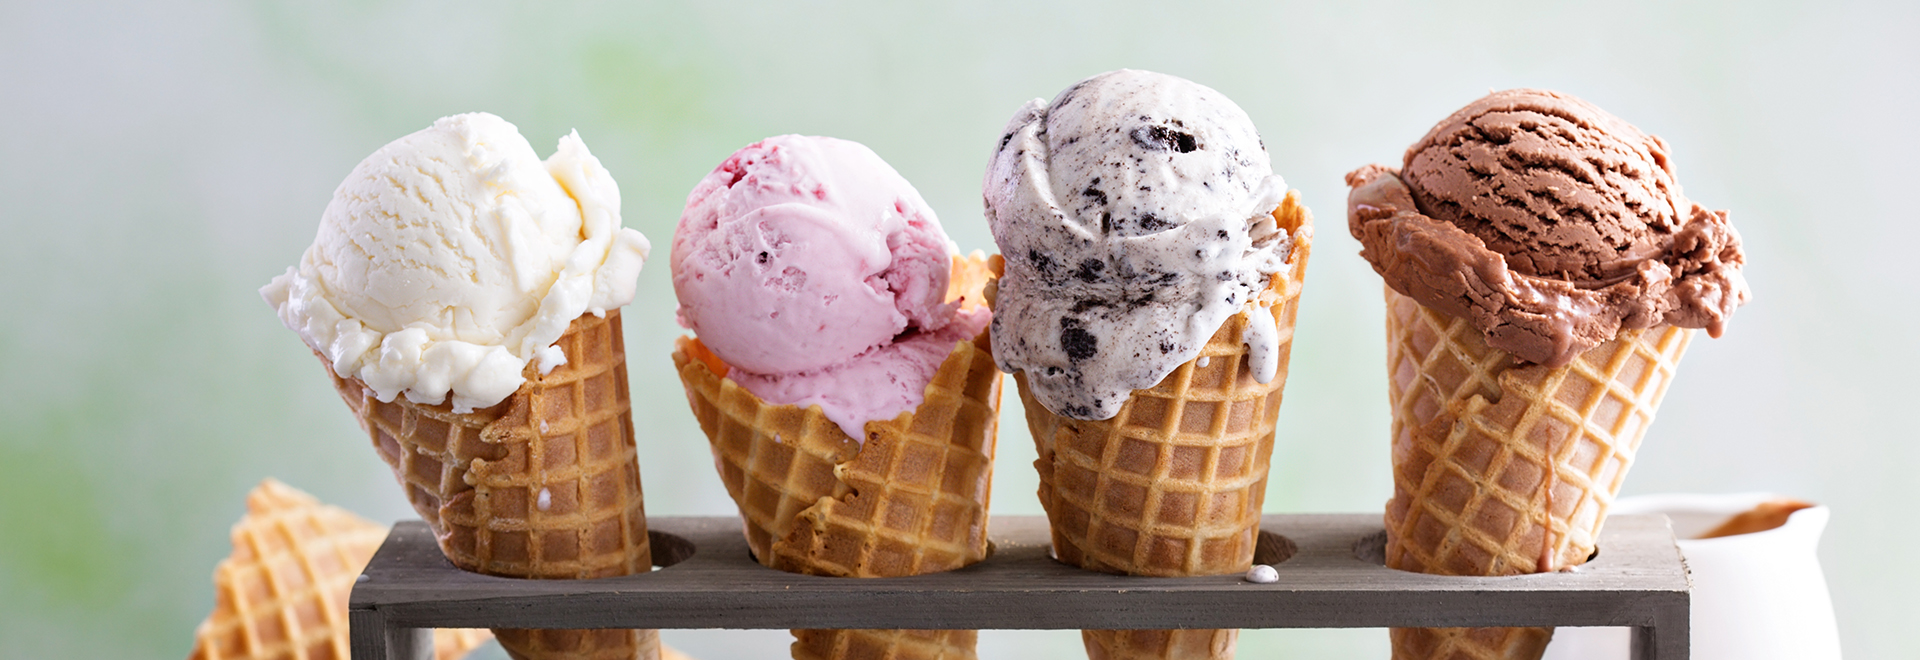 benefits-of-ice-cream